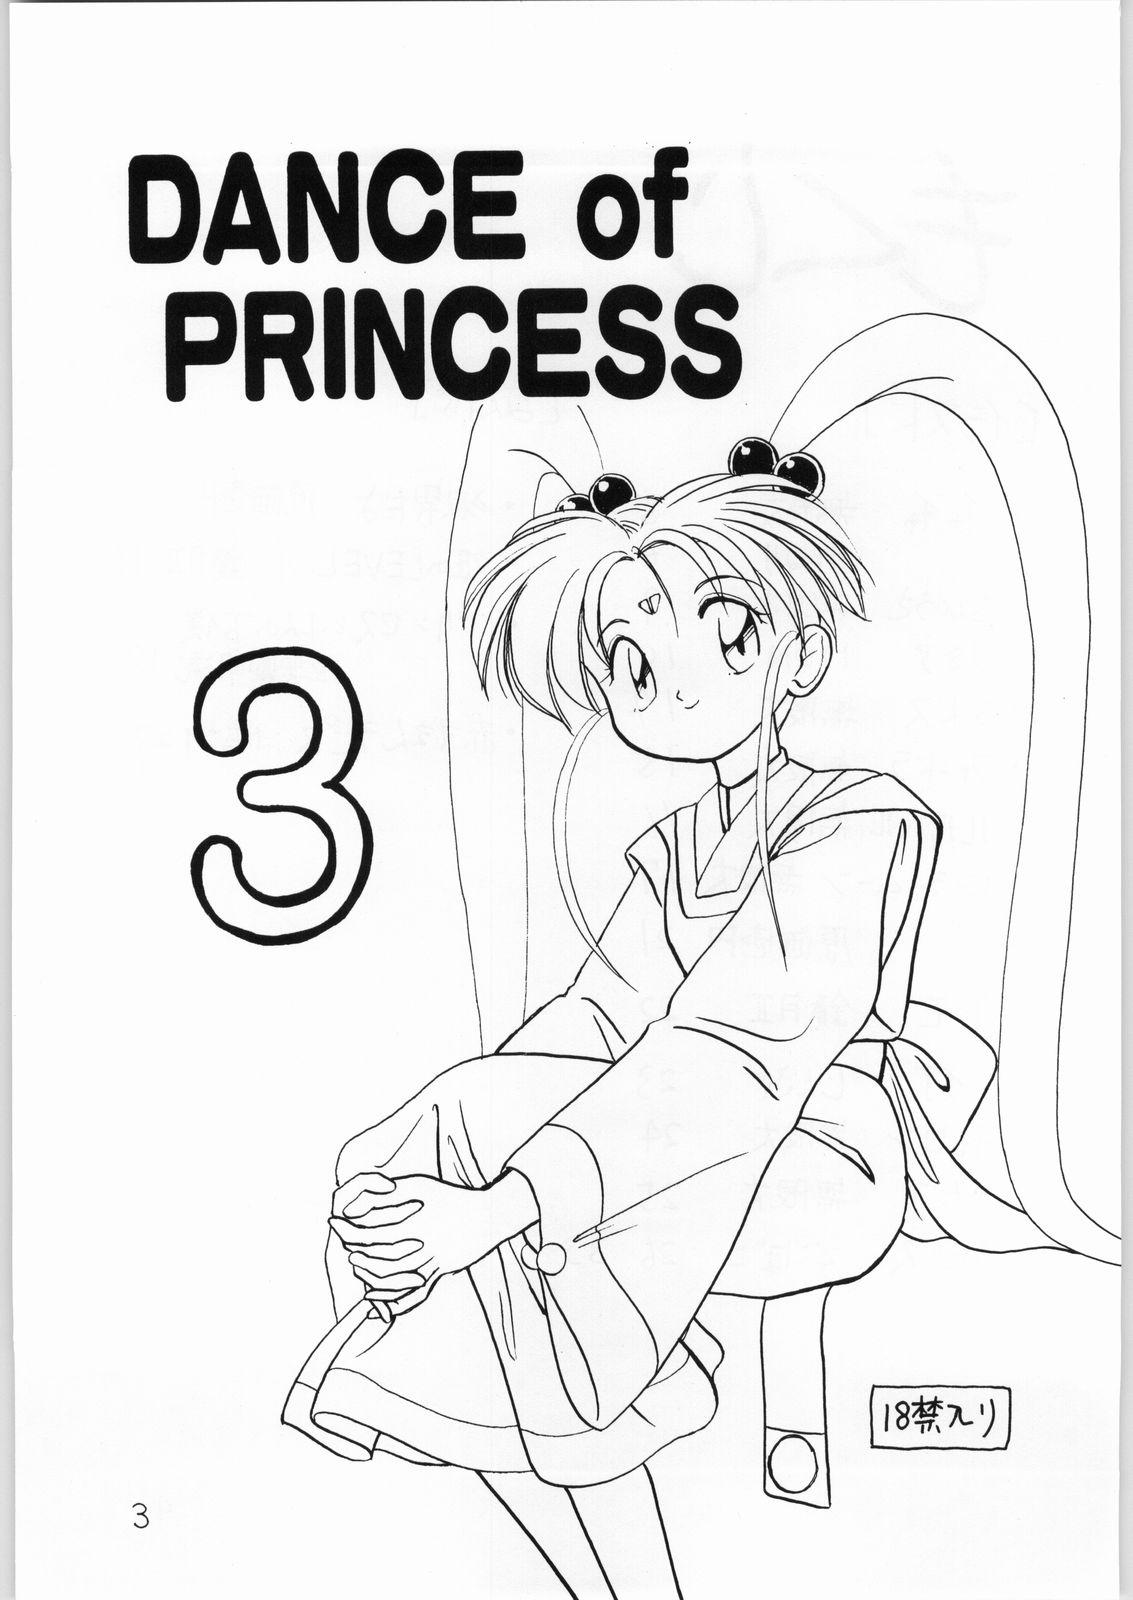 Transsexual Dance of Princess 3 - Sailor moon Tenchi muyo Akazukin cha cha Minky momo Ng knight lamune and 40 Camera - Page 2